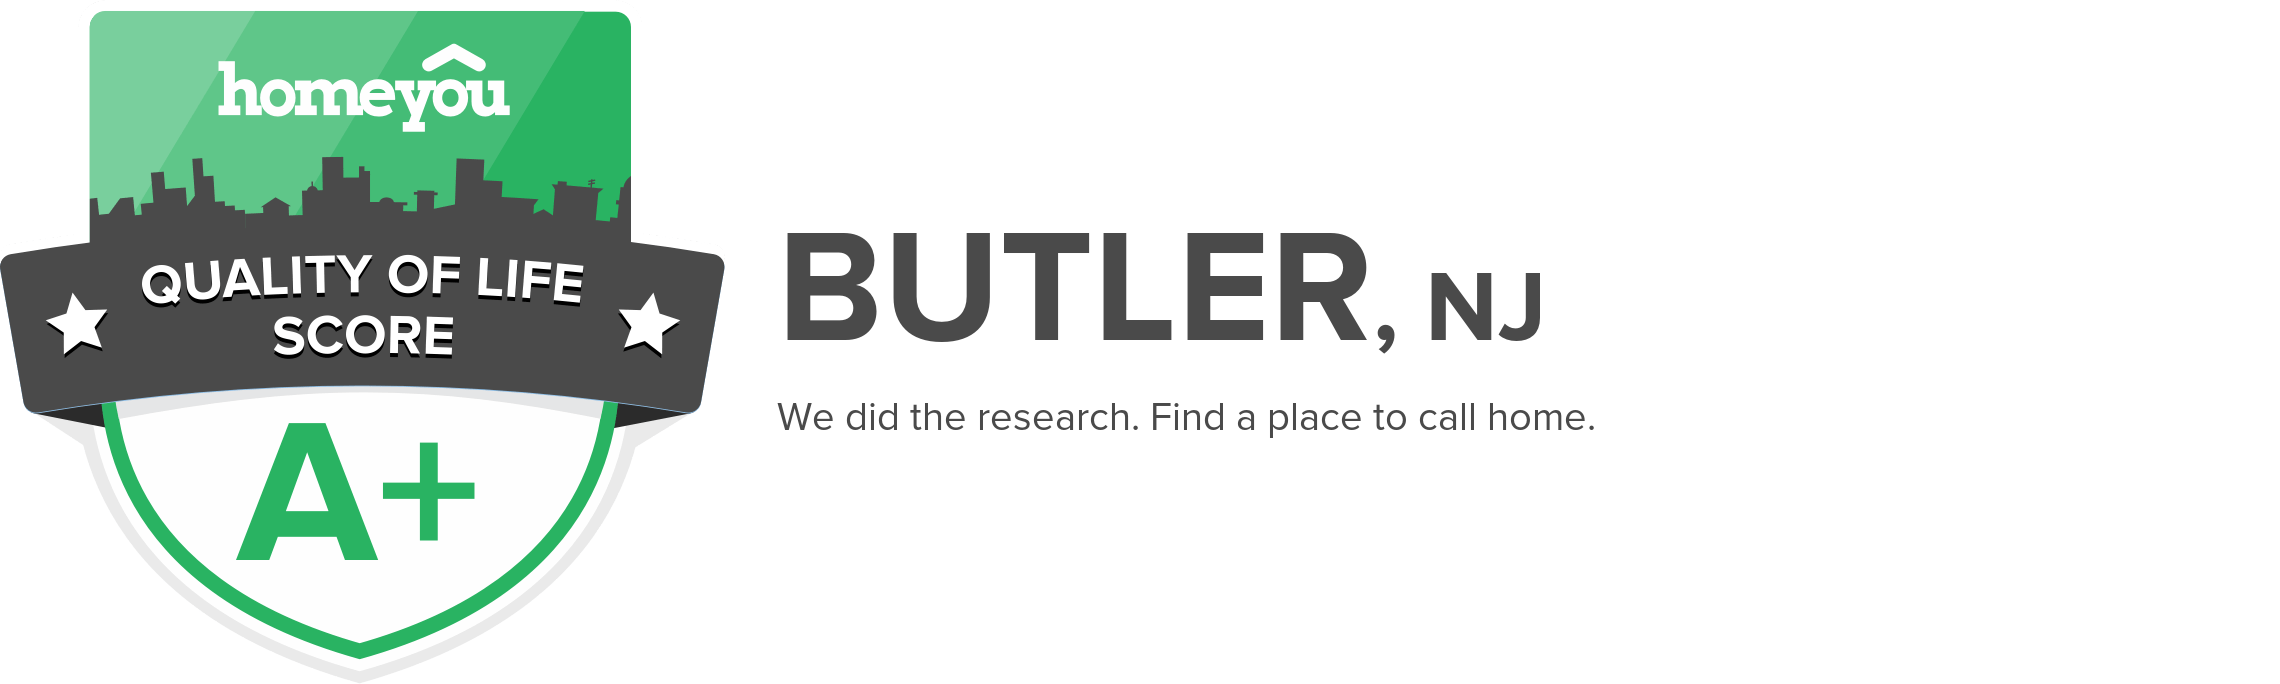 Butler, NJ